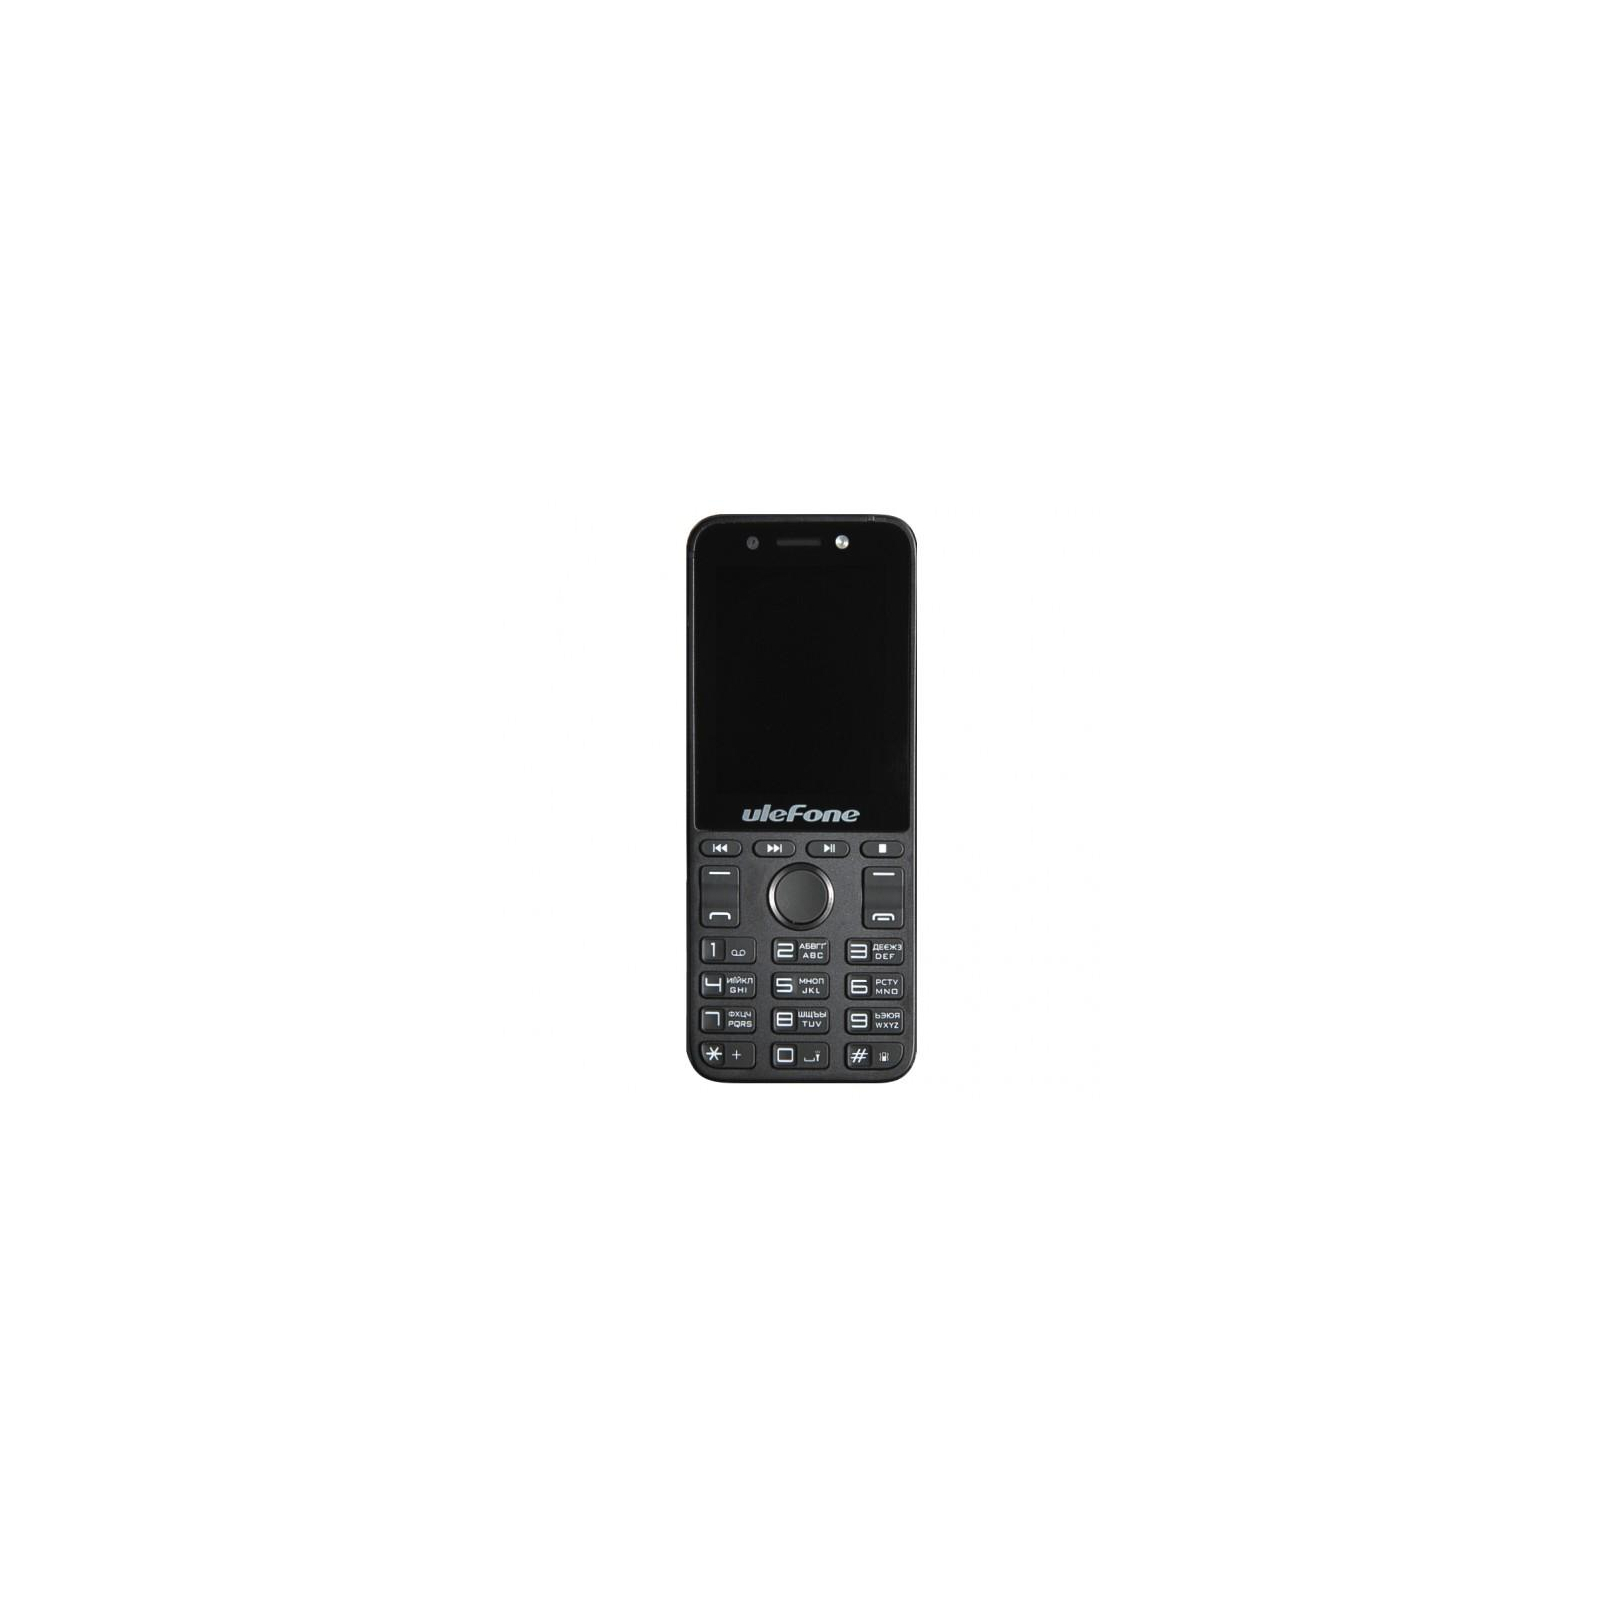 Мобильный телефон Ulefone A1 Black (6946285849153)